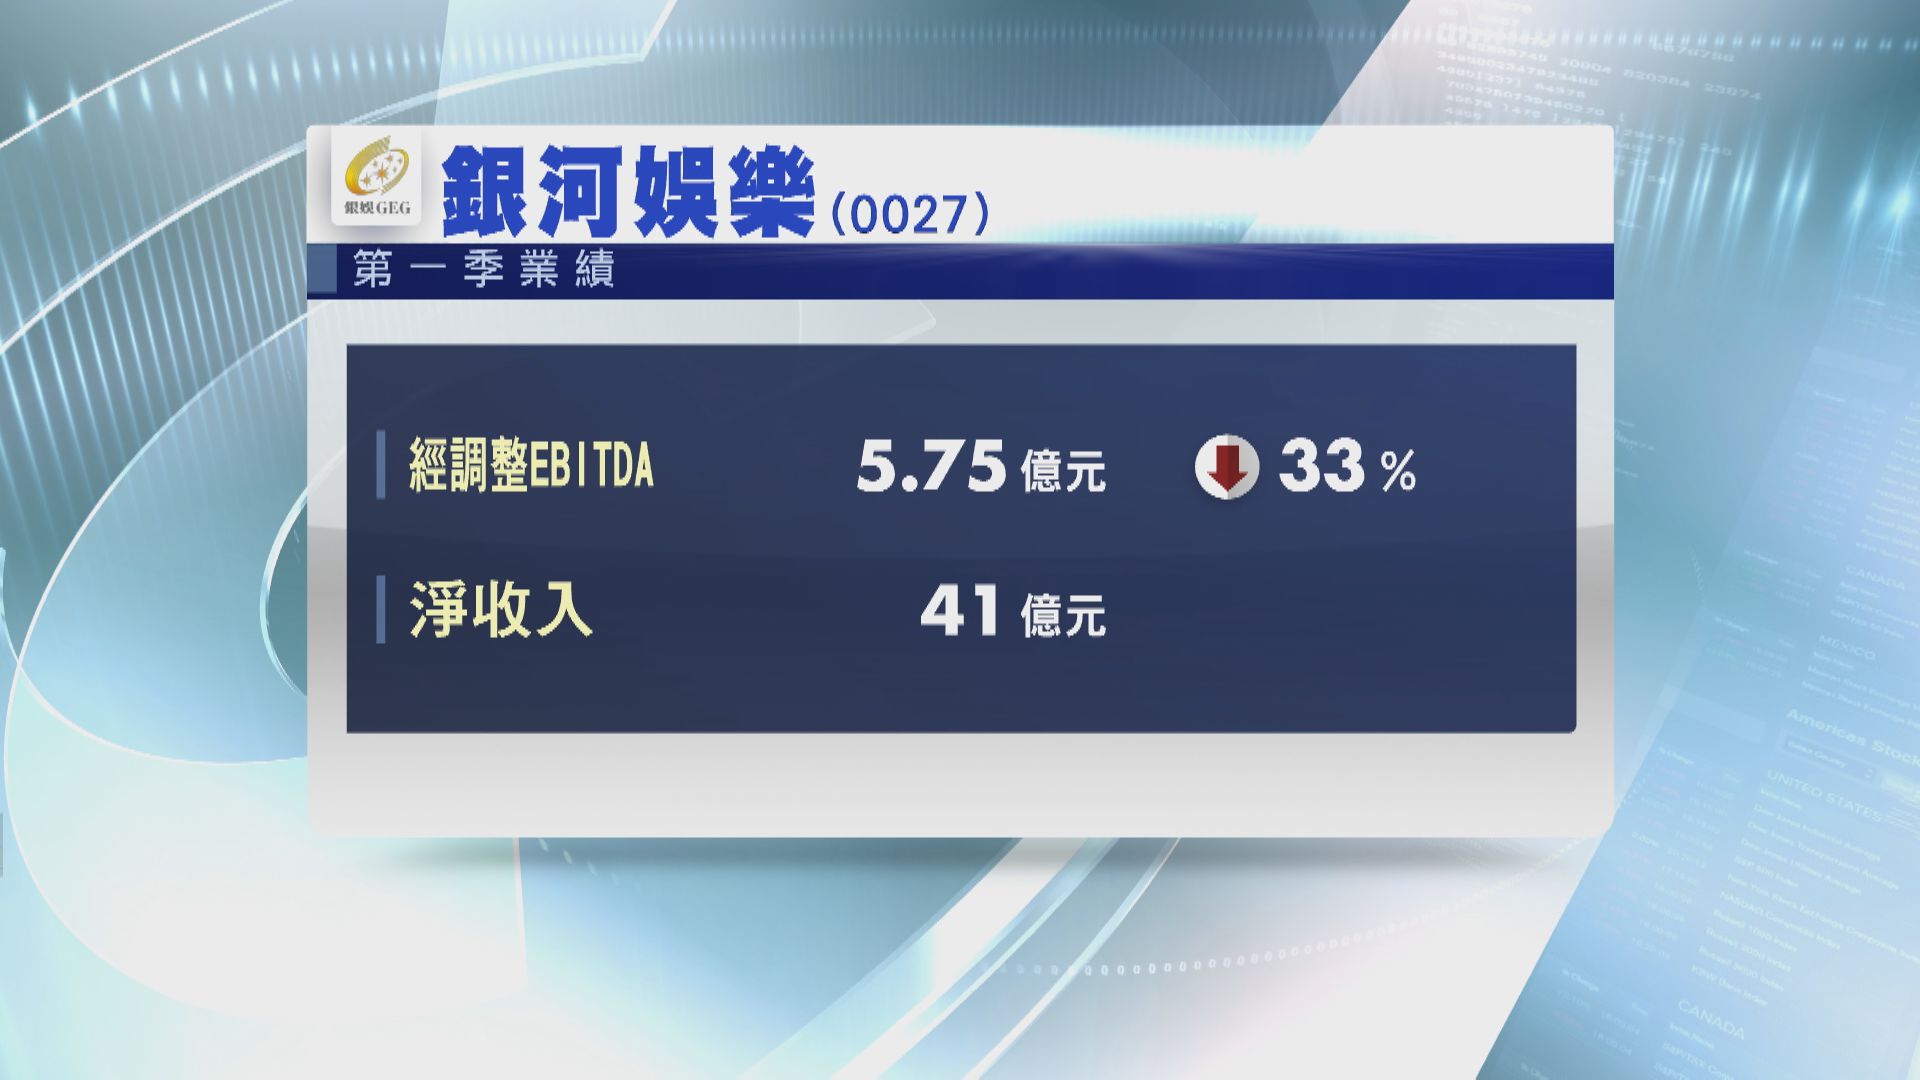 【業績速報】銀娛首季經調整EBITDA跌33%